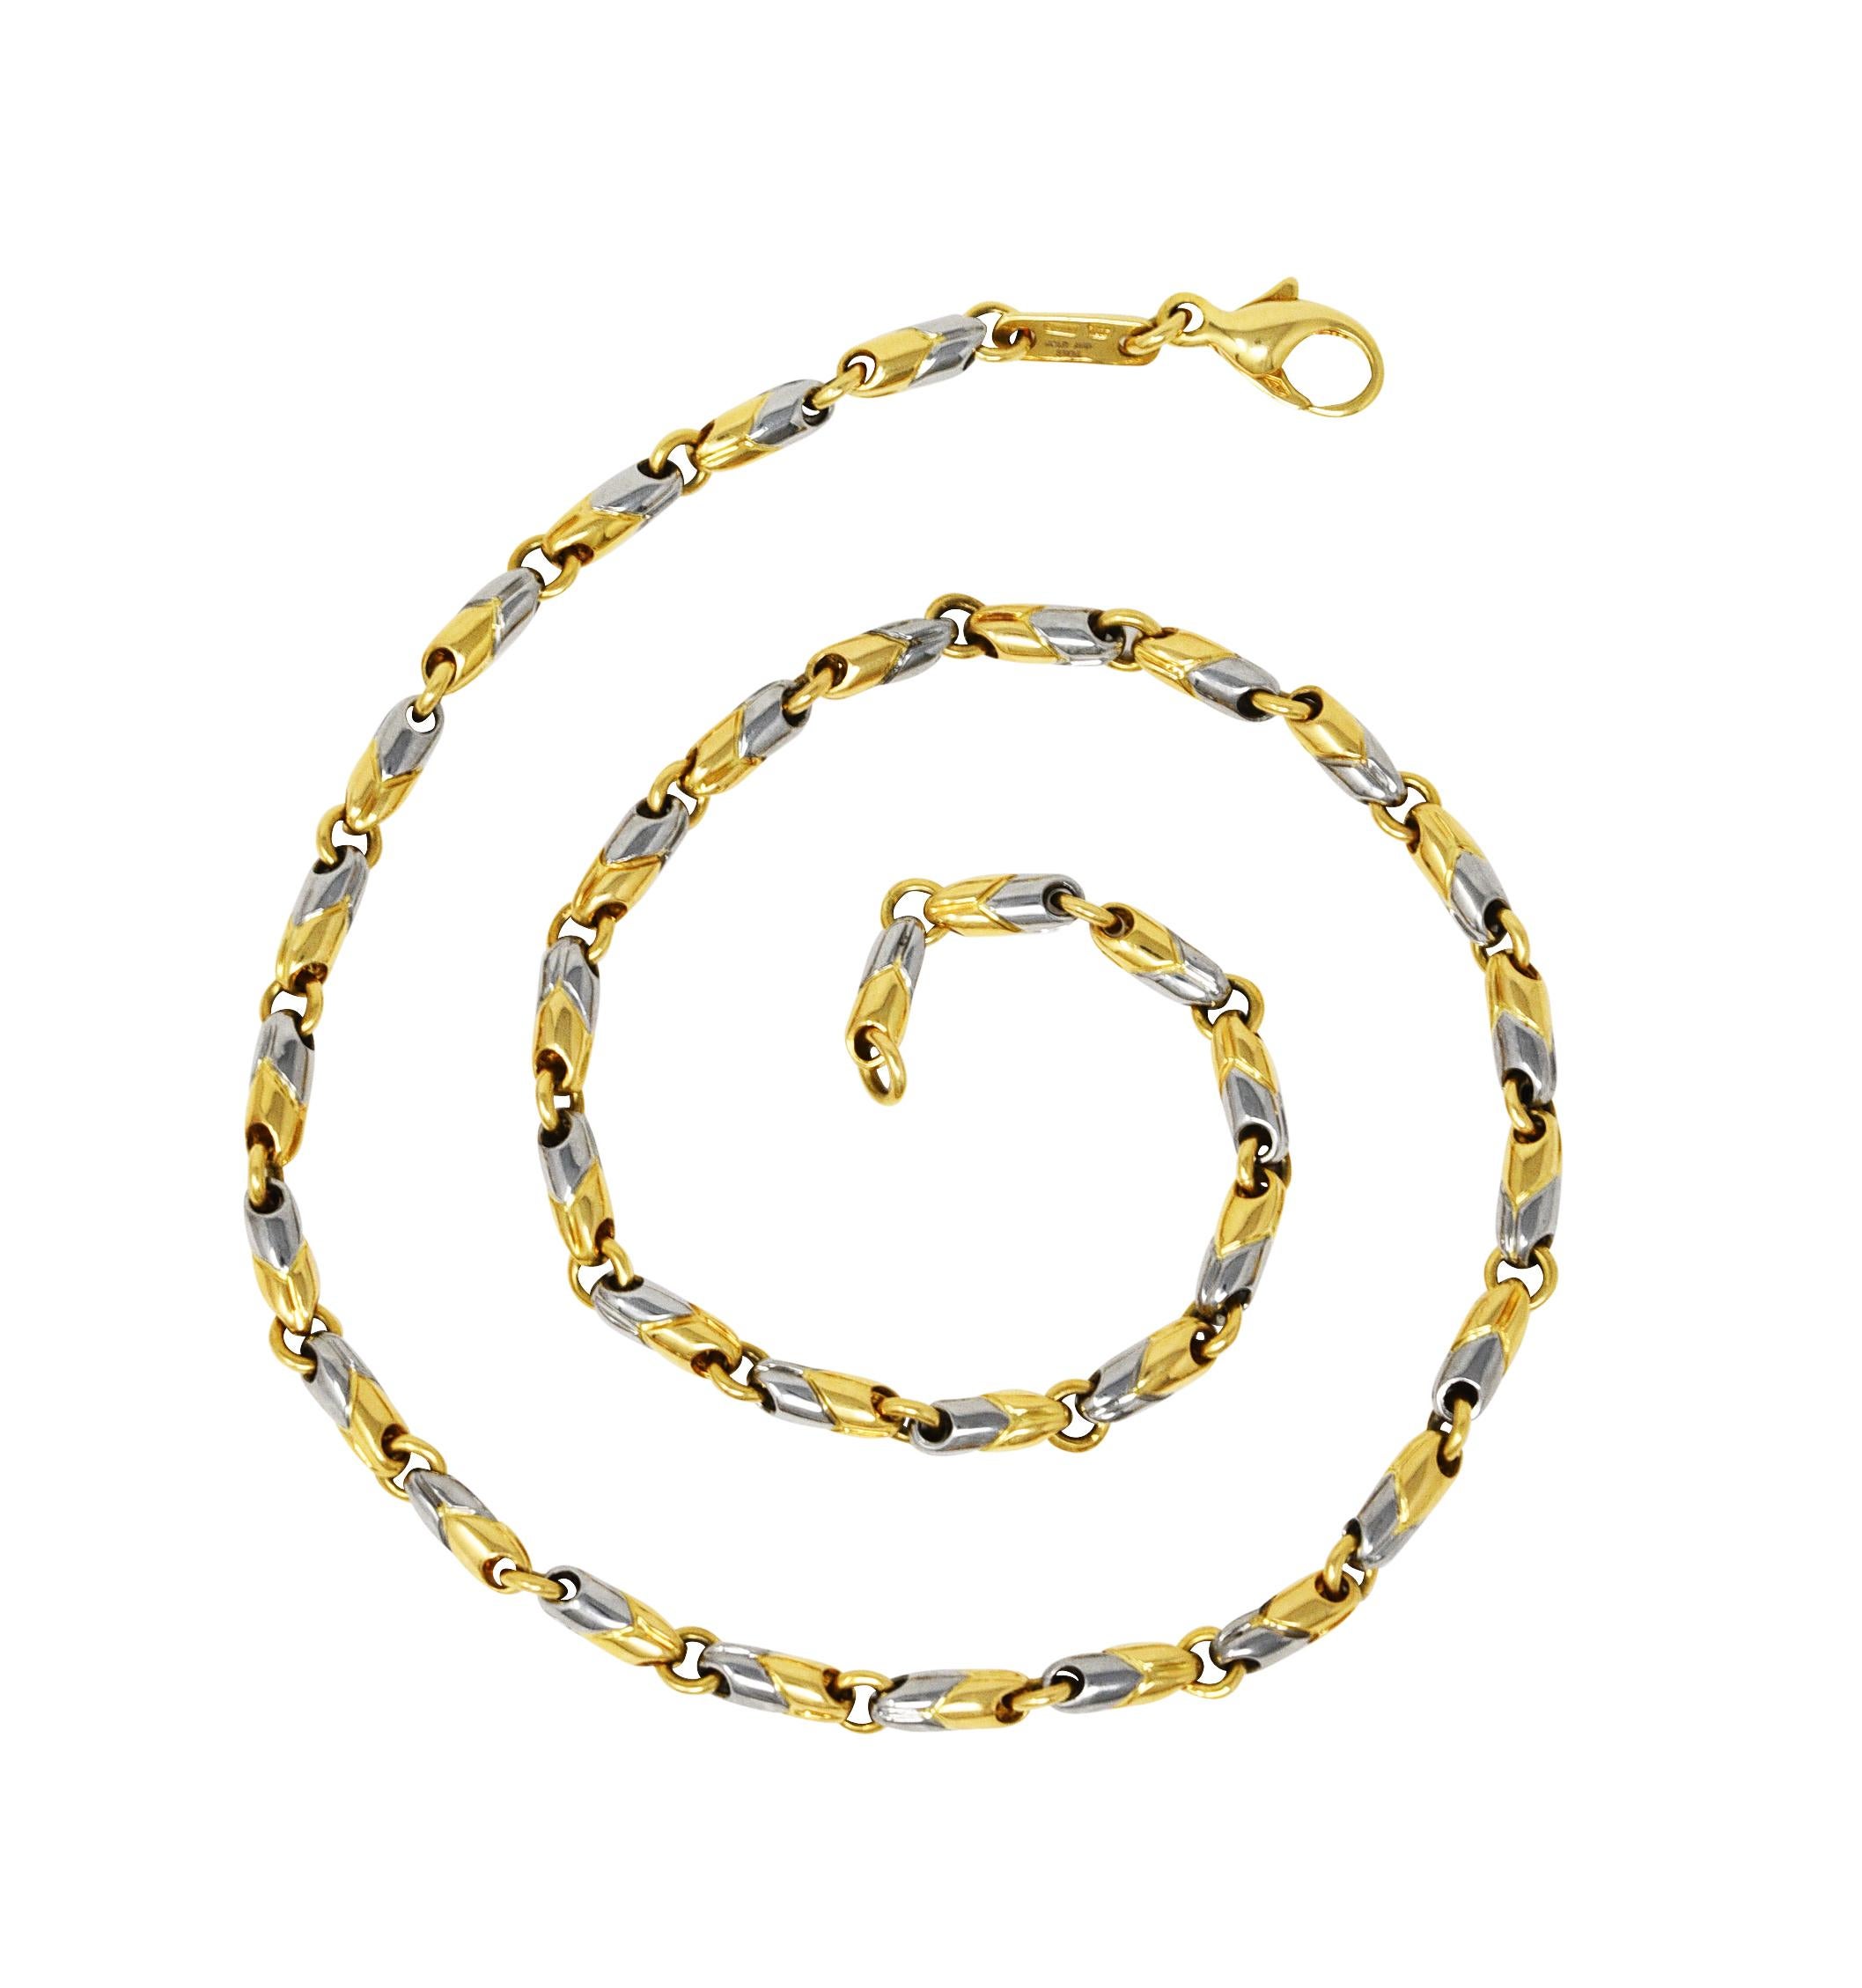 Le collier est composé de maillons striés en forme de tonneau avec le motif chevron signé Passo Doppio. Les liens sont composés pour moitié d'or blanc et pour moitié d'or jaune. Avec des liens d'écartement à anneau de saut. Complété par un fermoir à